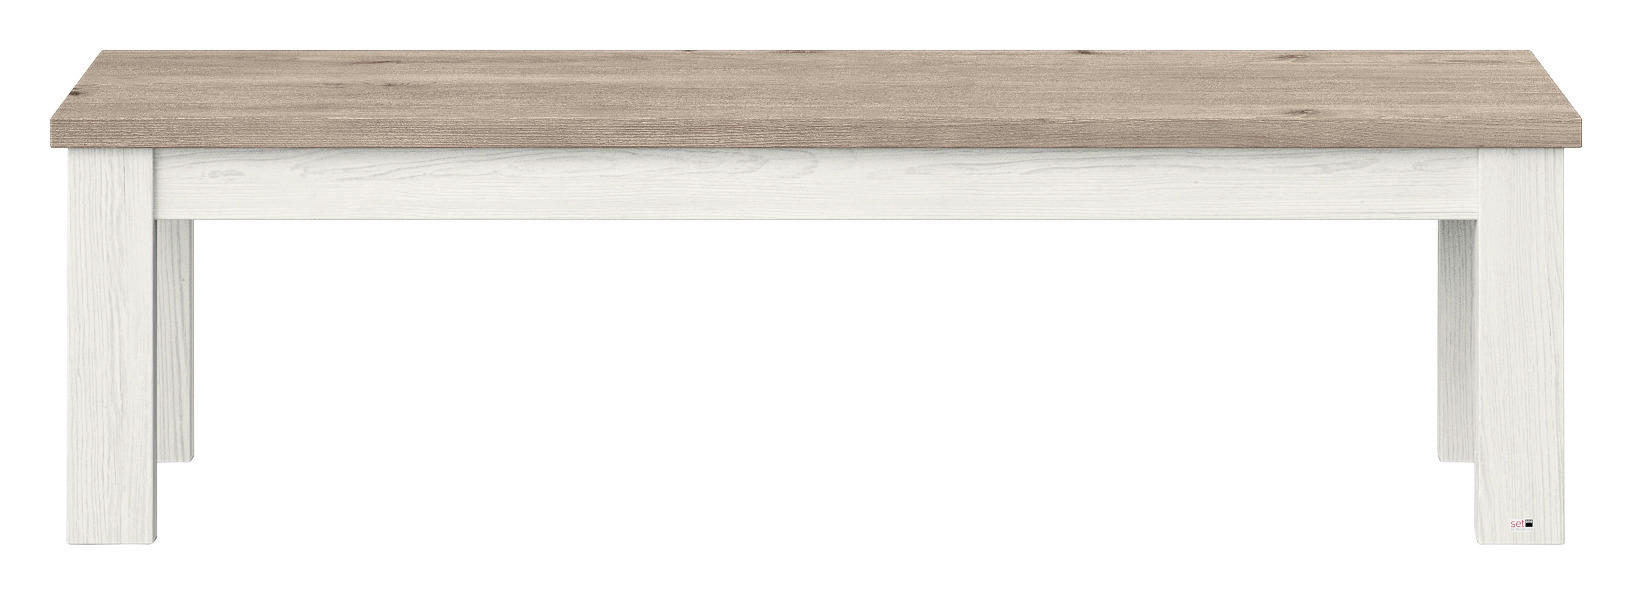 SITZBANK 160/45/43 cm Weiß, Eichefarben  - Eichefarben/Weiß, Design (160/45/43cm) - SetOne by Musterring